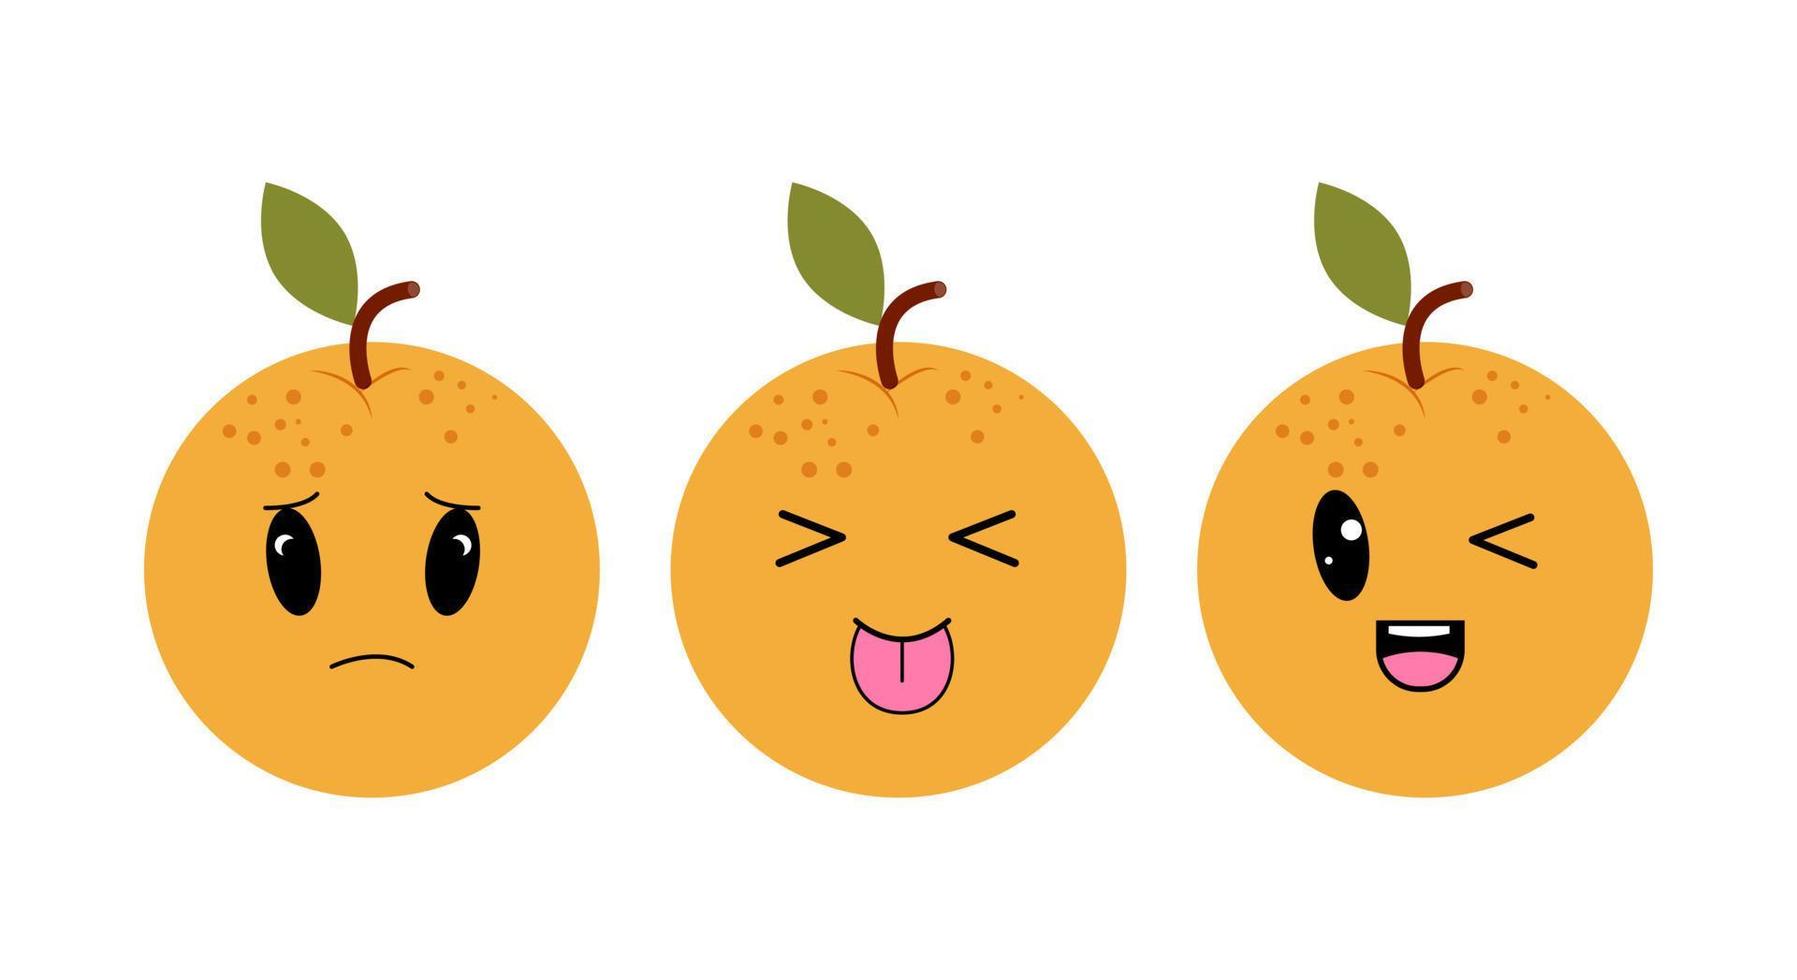 Oranges with kawaii eyes. Flat design vector illustration of oranges